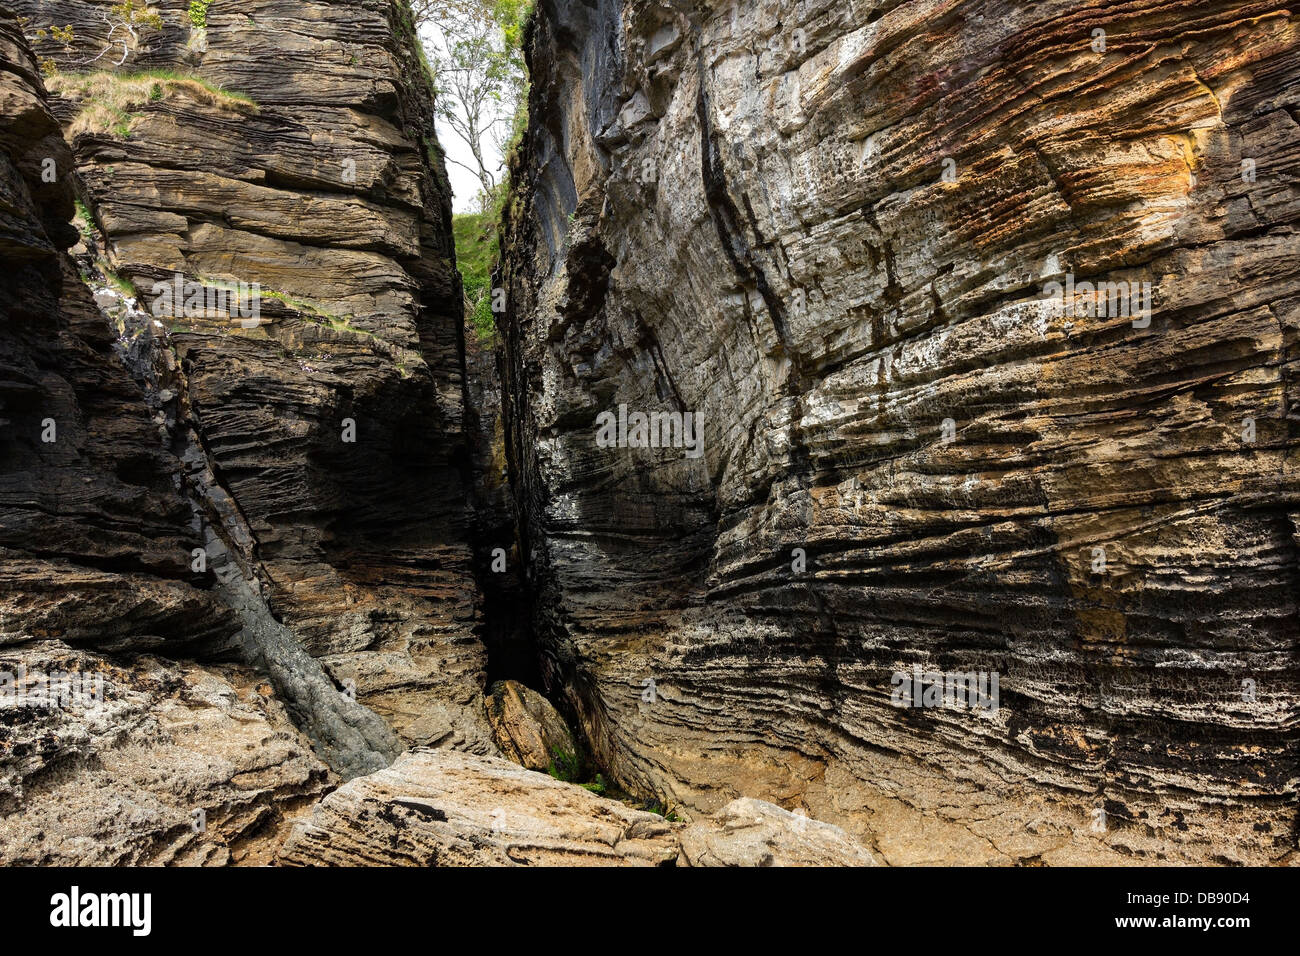 Les strates de roches sédimentaires érodées spectaculaire et ravin en falaises en approche de Spar Grotte, Glasnakille, Isle of Skye, Scotland, UK Banque D'Images